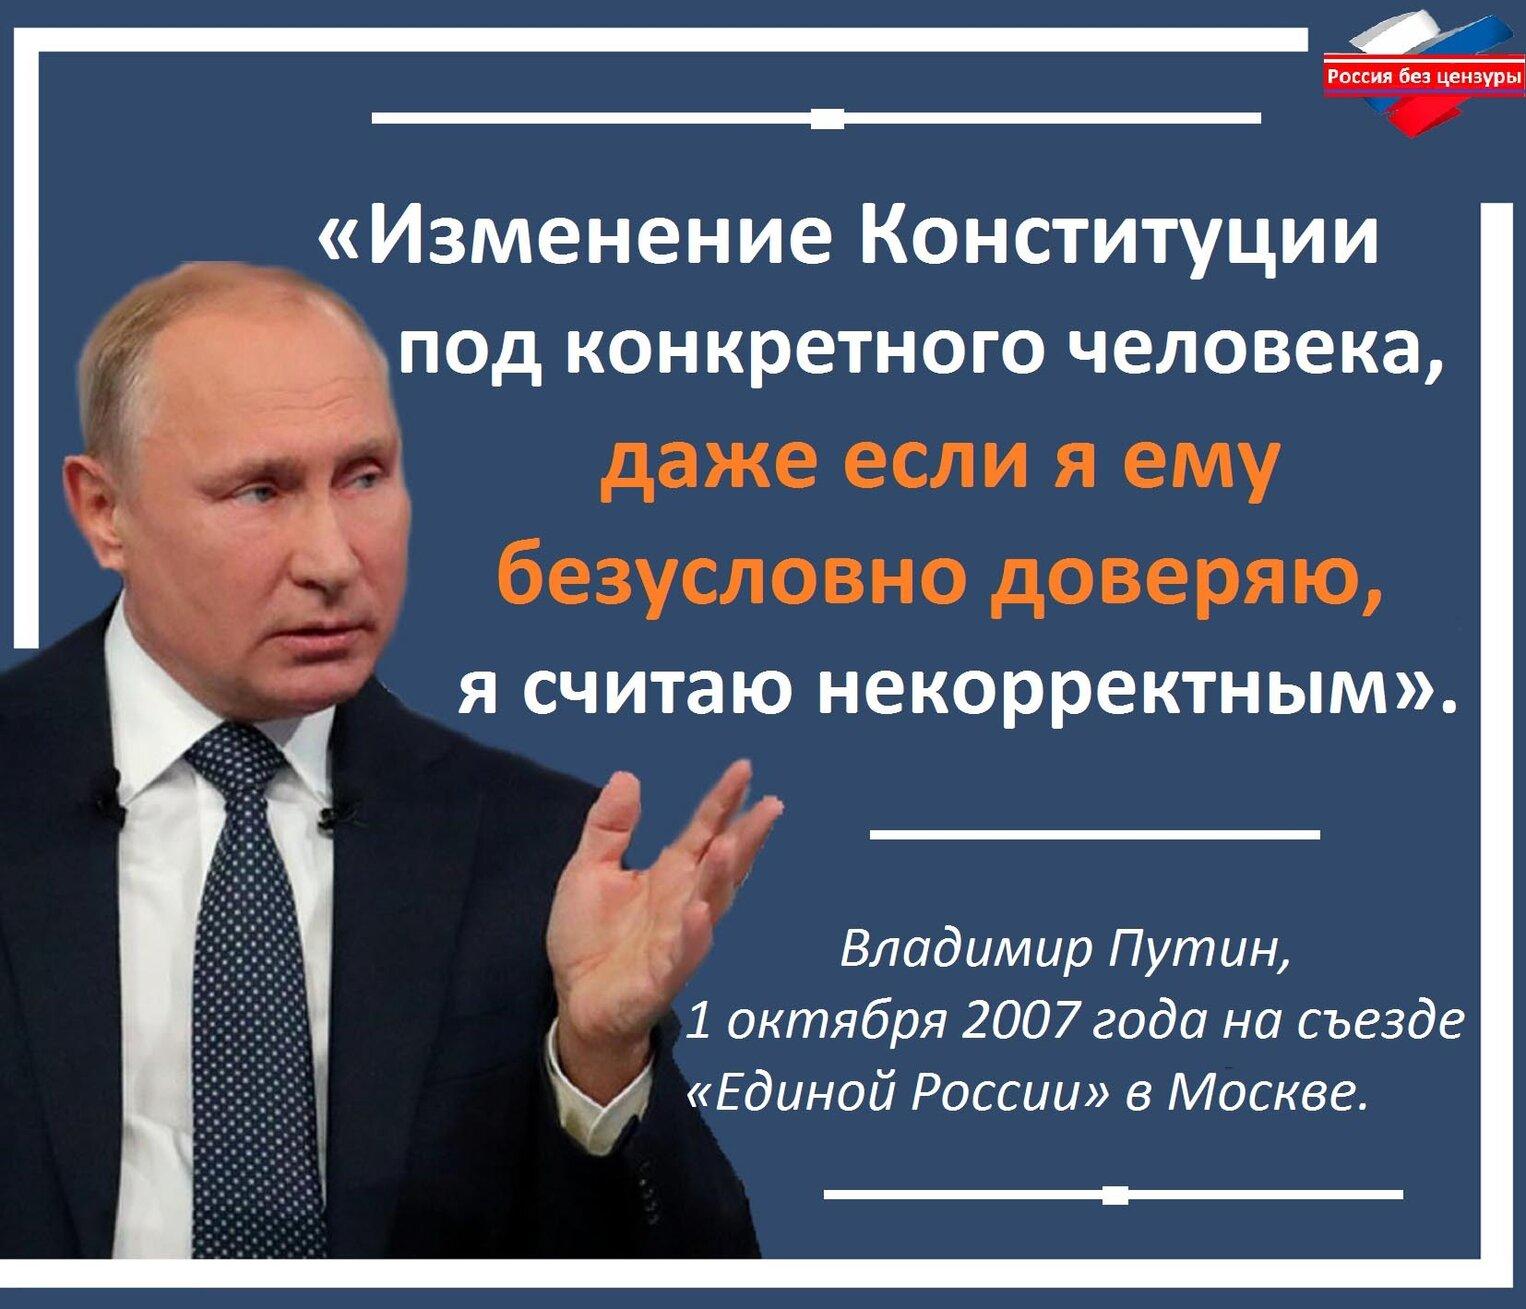 Мнение народа о путине. Цитата Путина про Конституцию. Законы против народа.